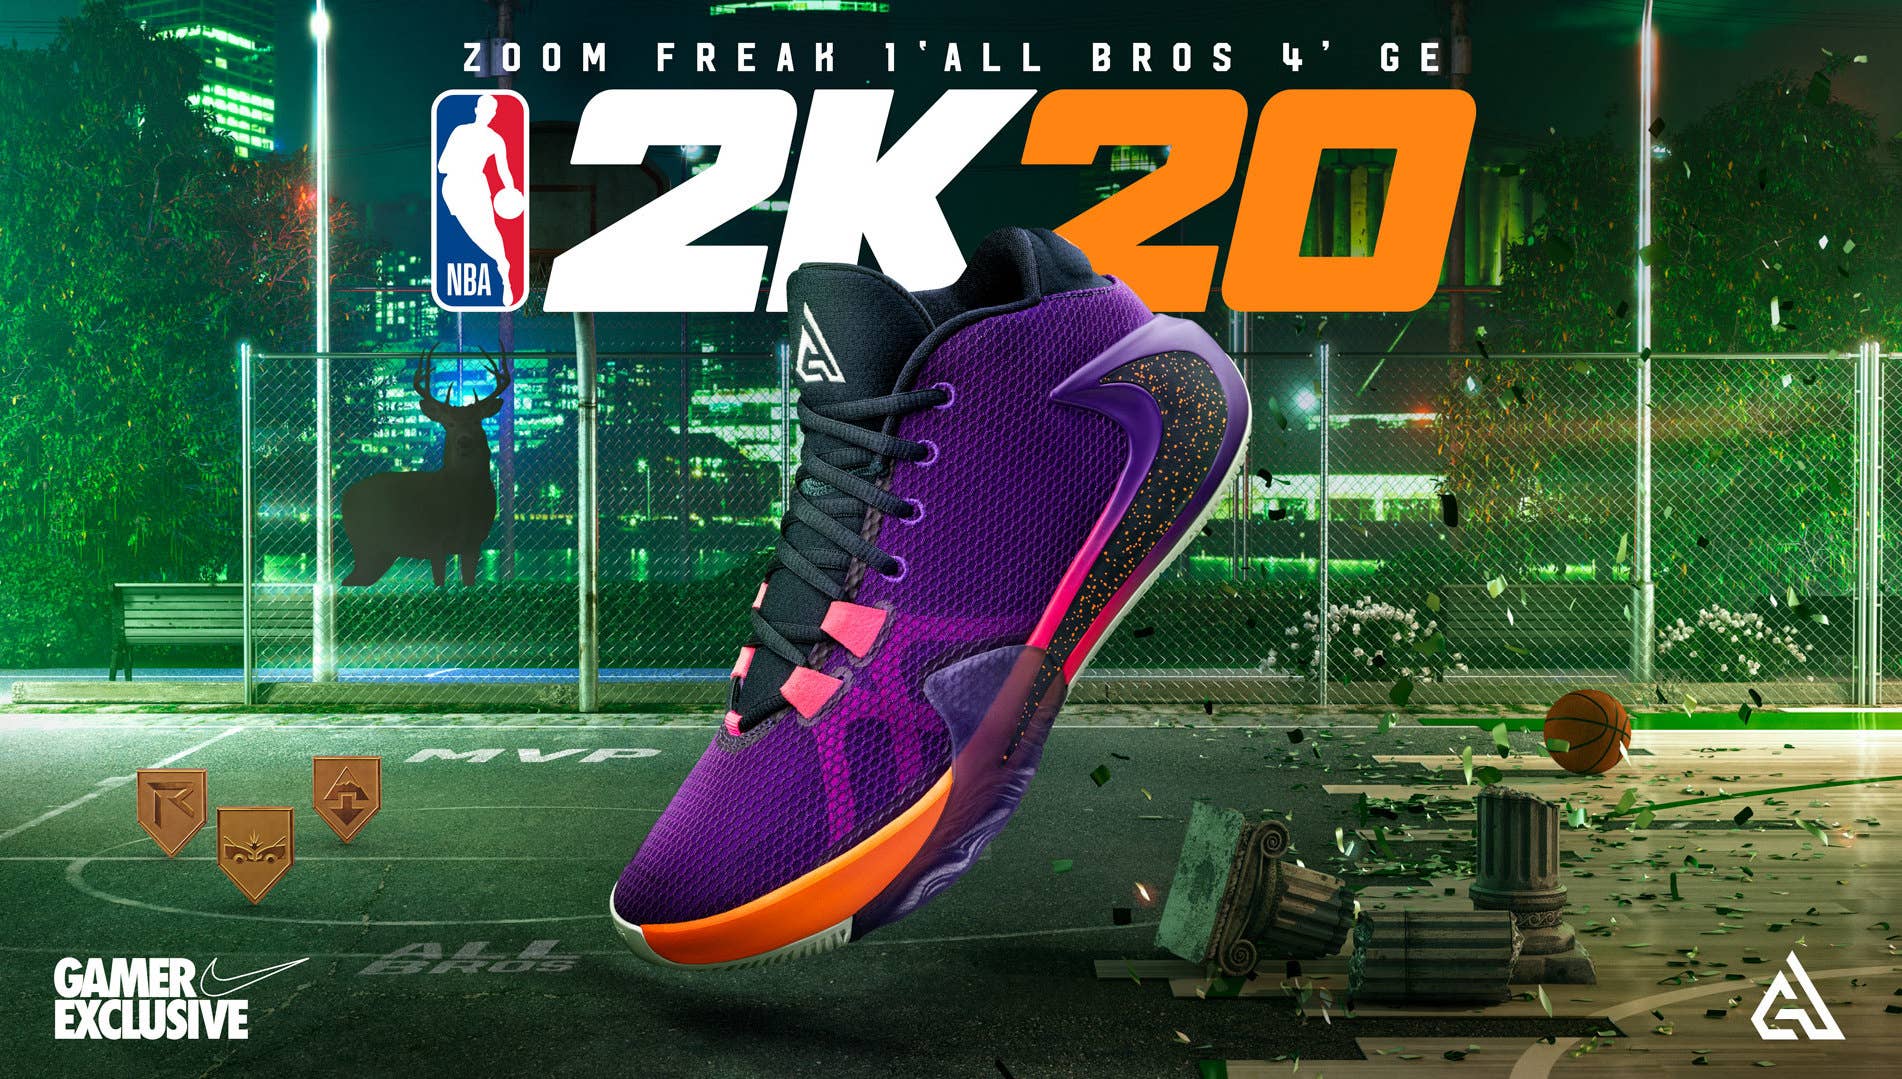 Nike Zoom Freak 1 GE 'All Bros 4'